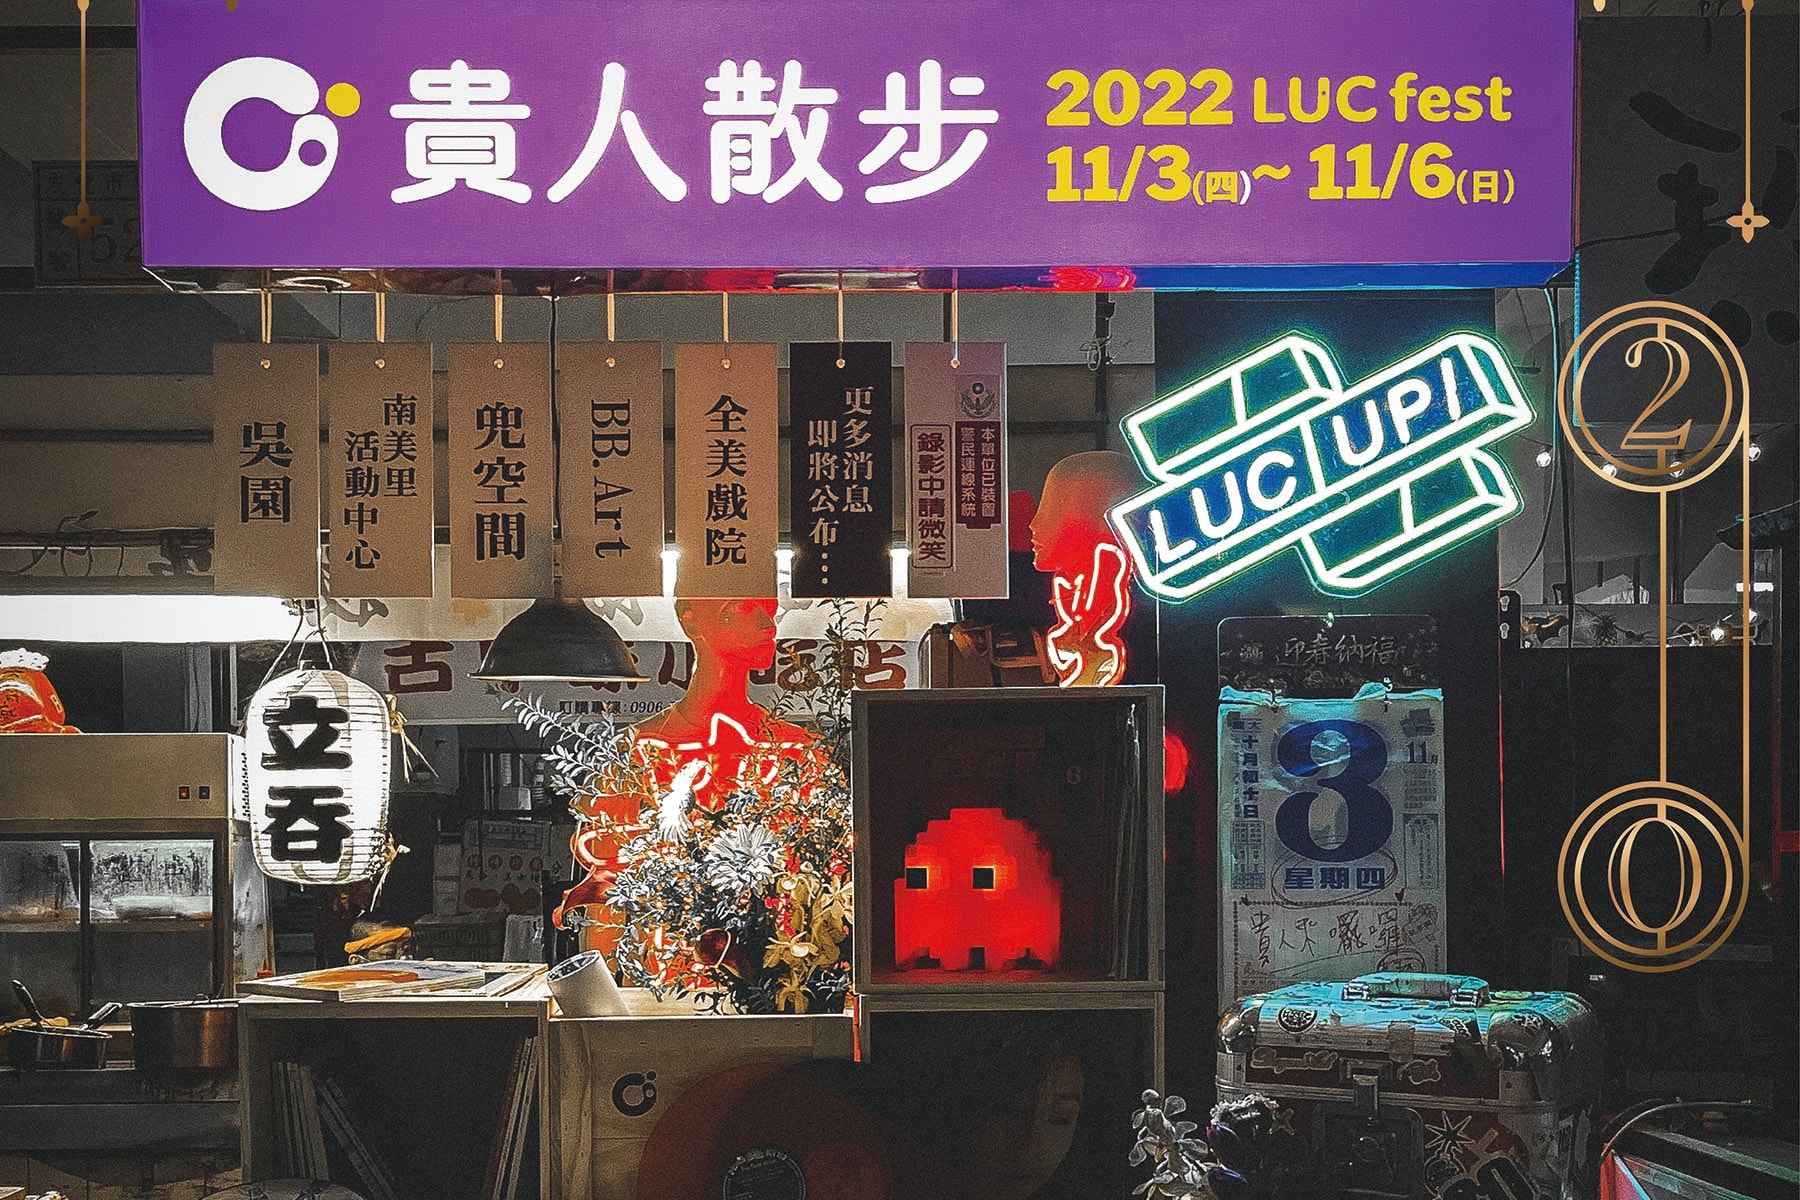 台南 2022「LUCfest 貴人散步音樂節」完整演出陣容、售票資訊公開